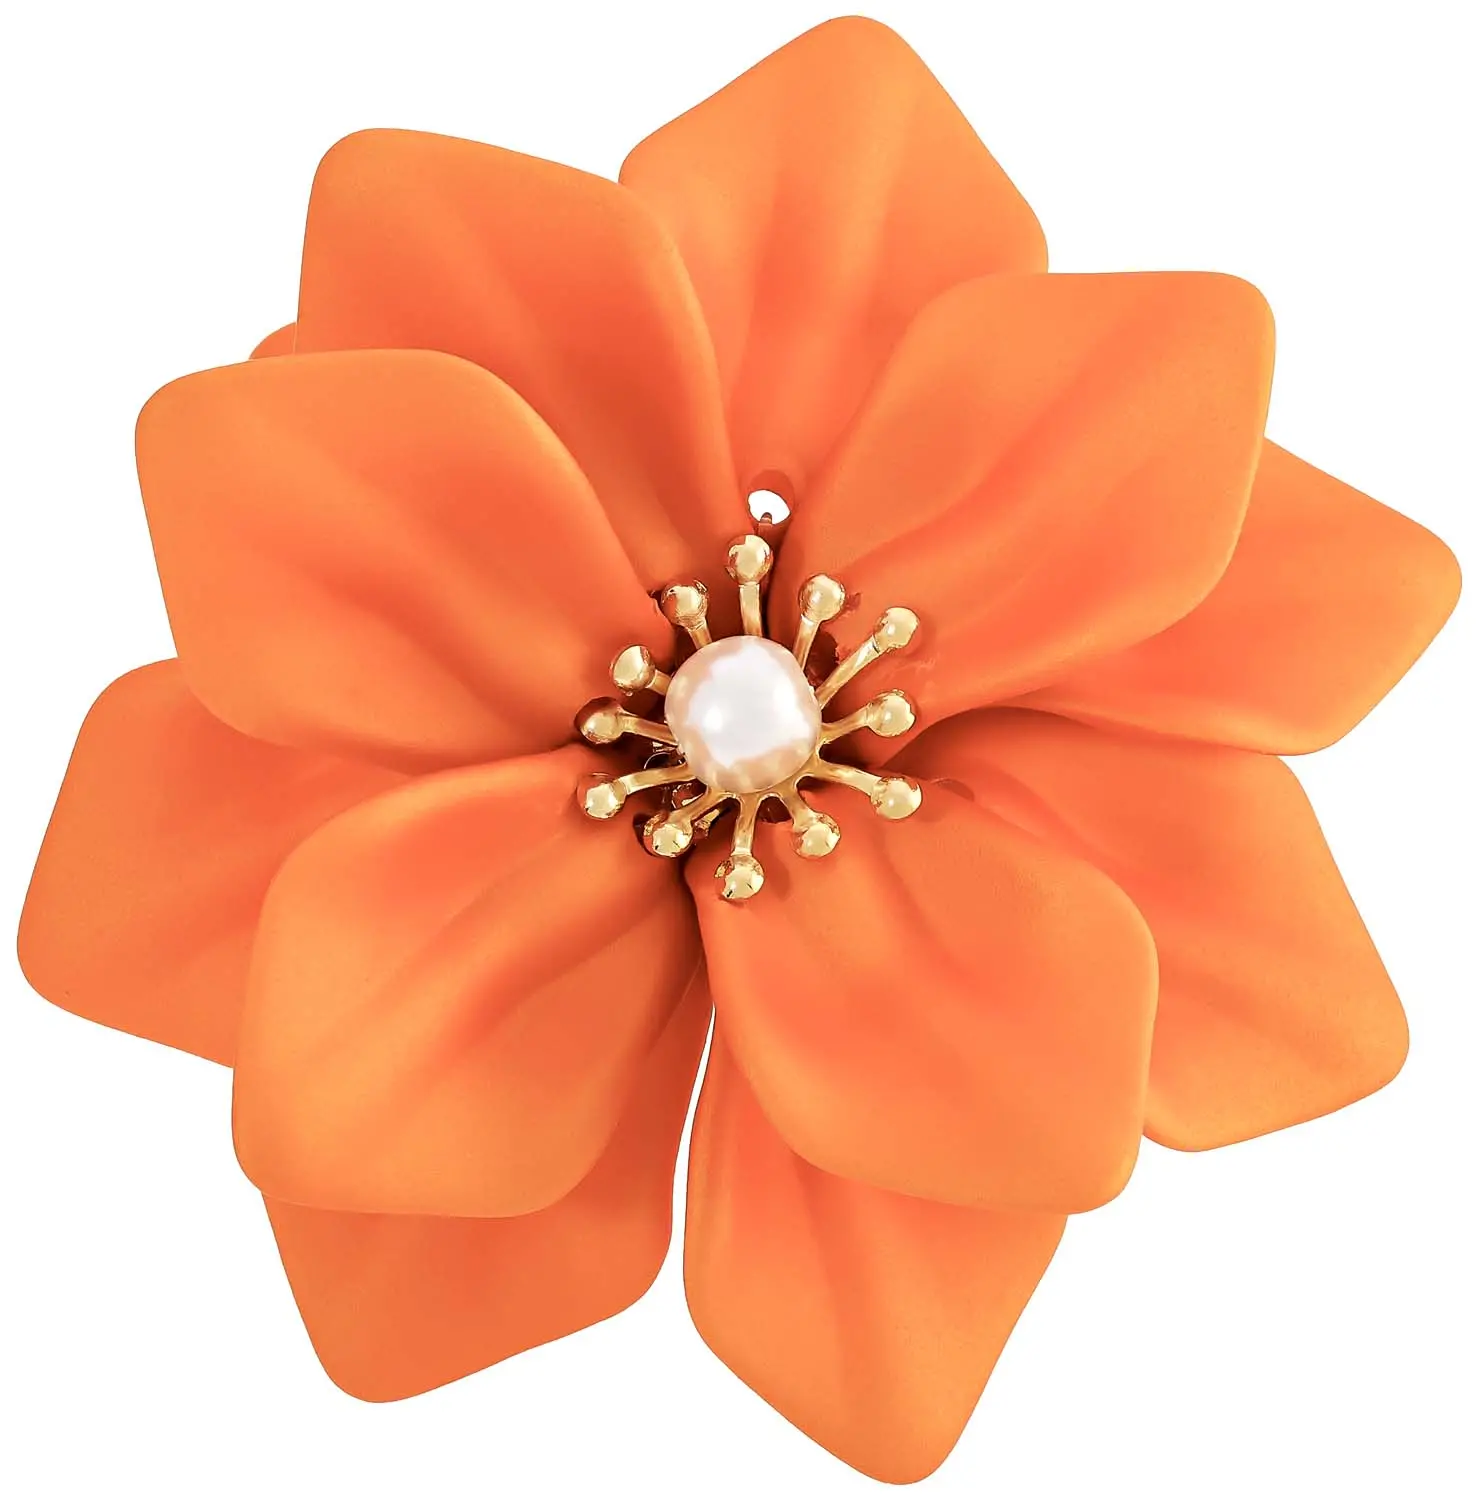 Anillo - Orange Blossom